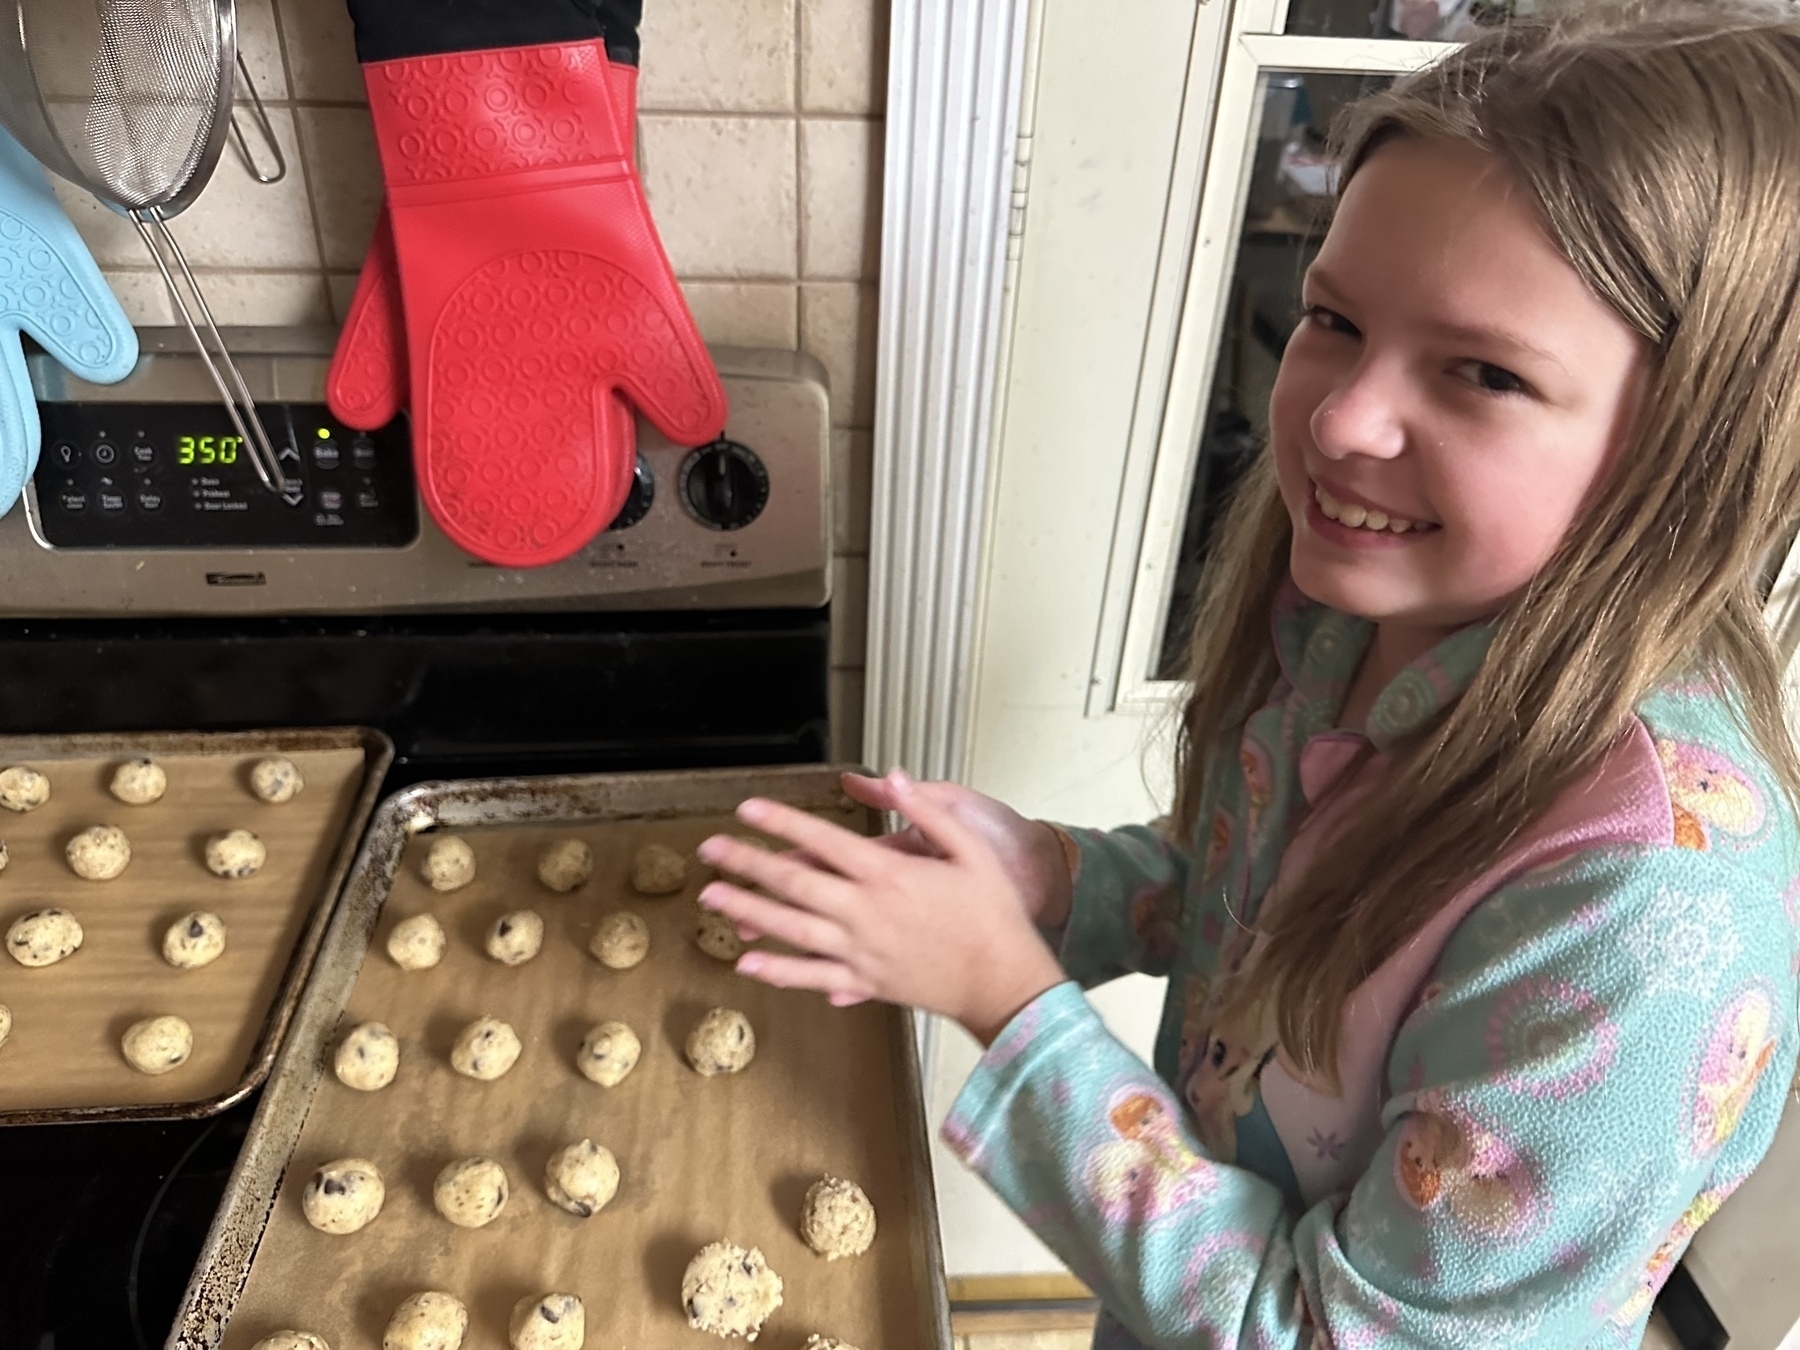 My daughter Lauren rolling cookie dough into balls